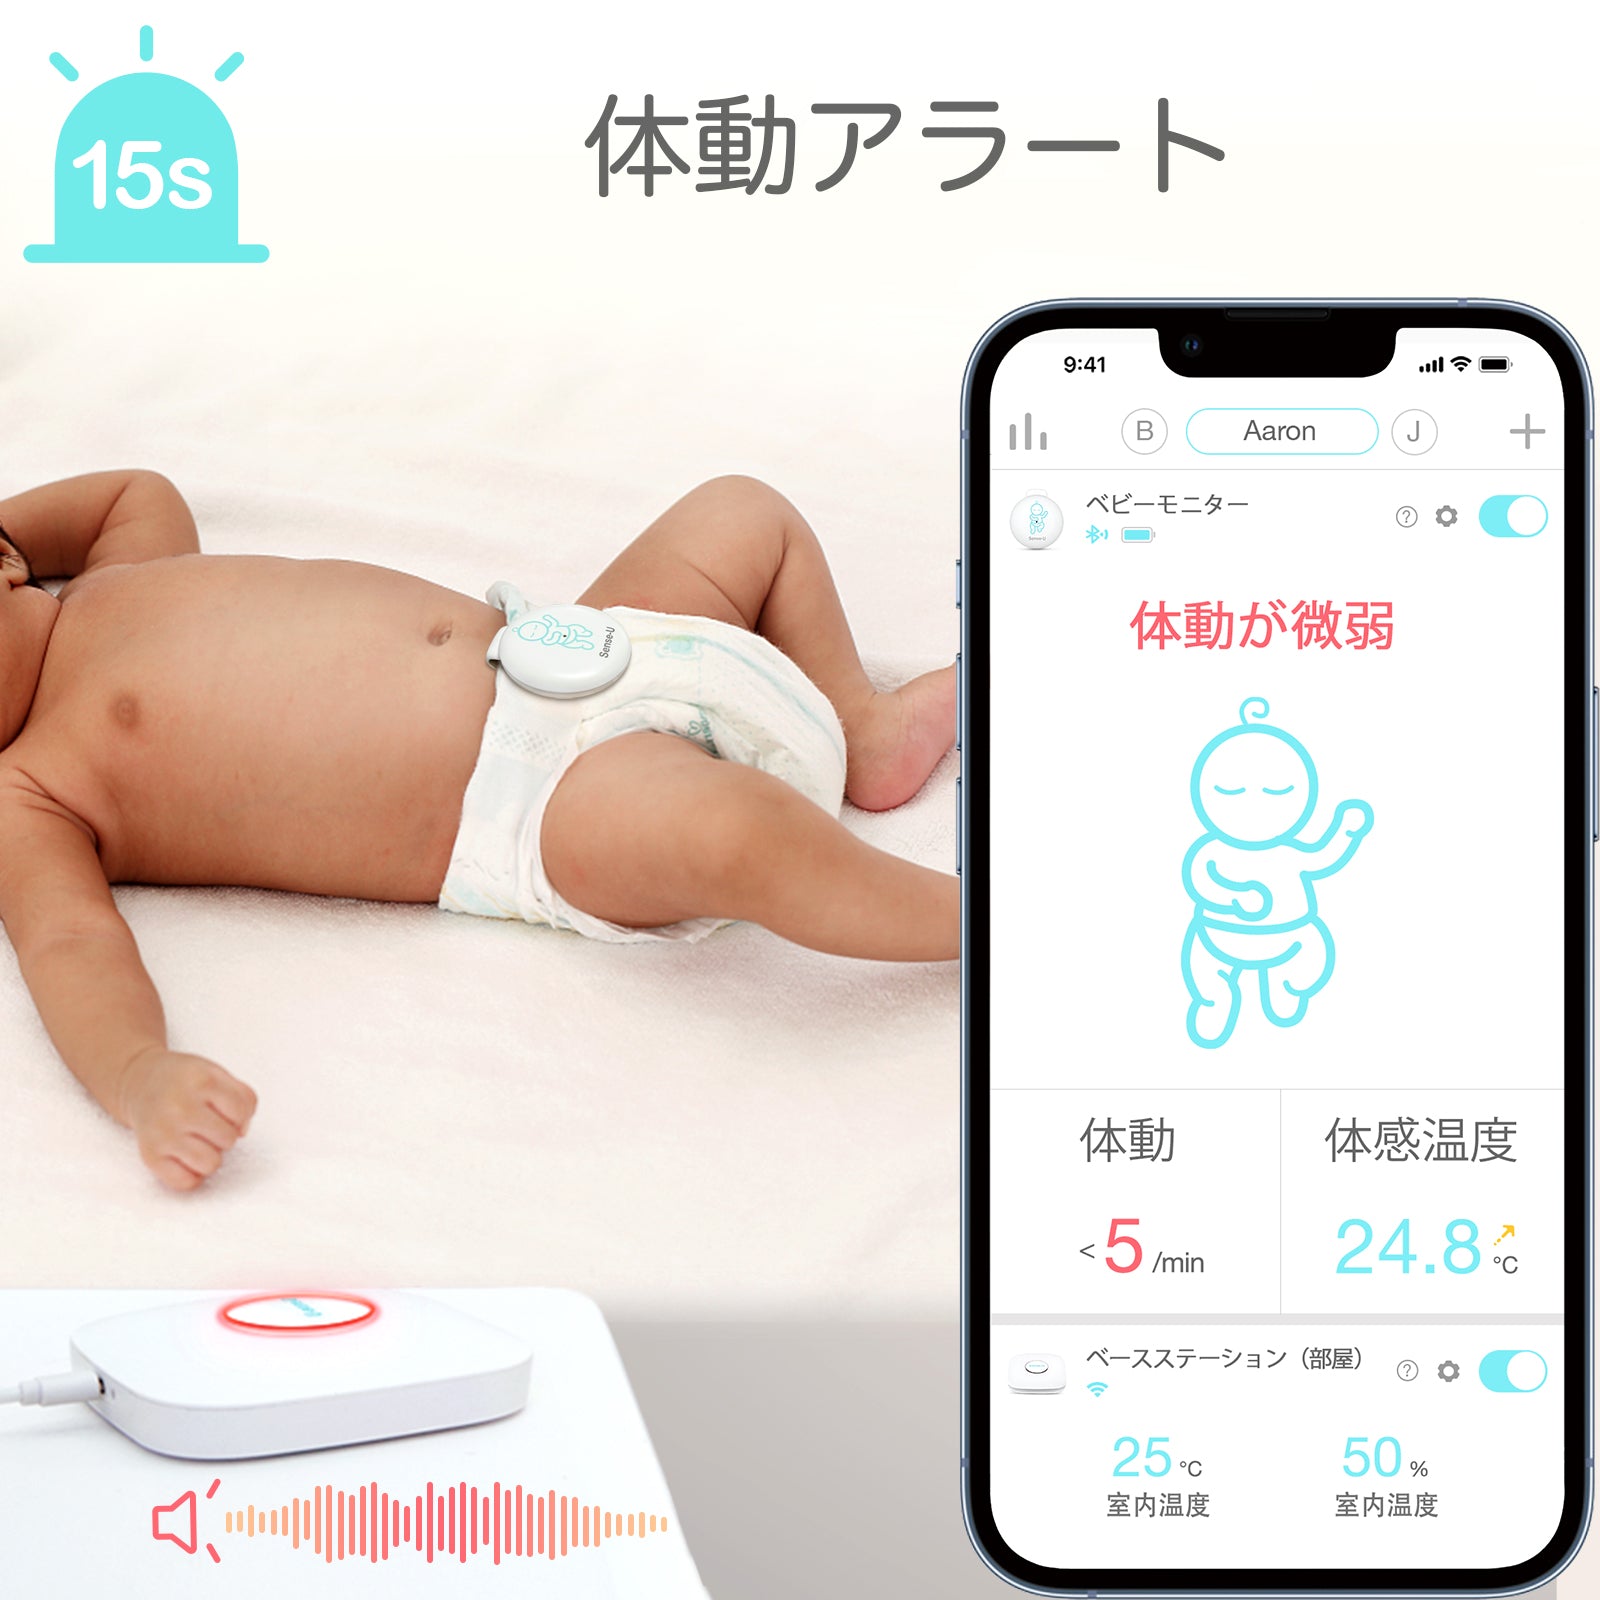 Sense-U Baby Monitor 3 ベースステーション付き